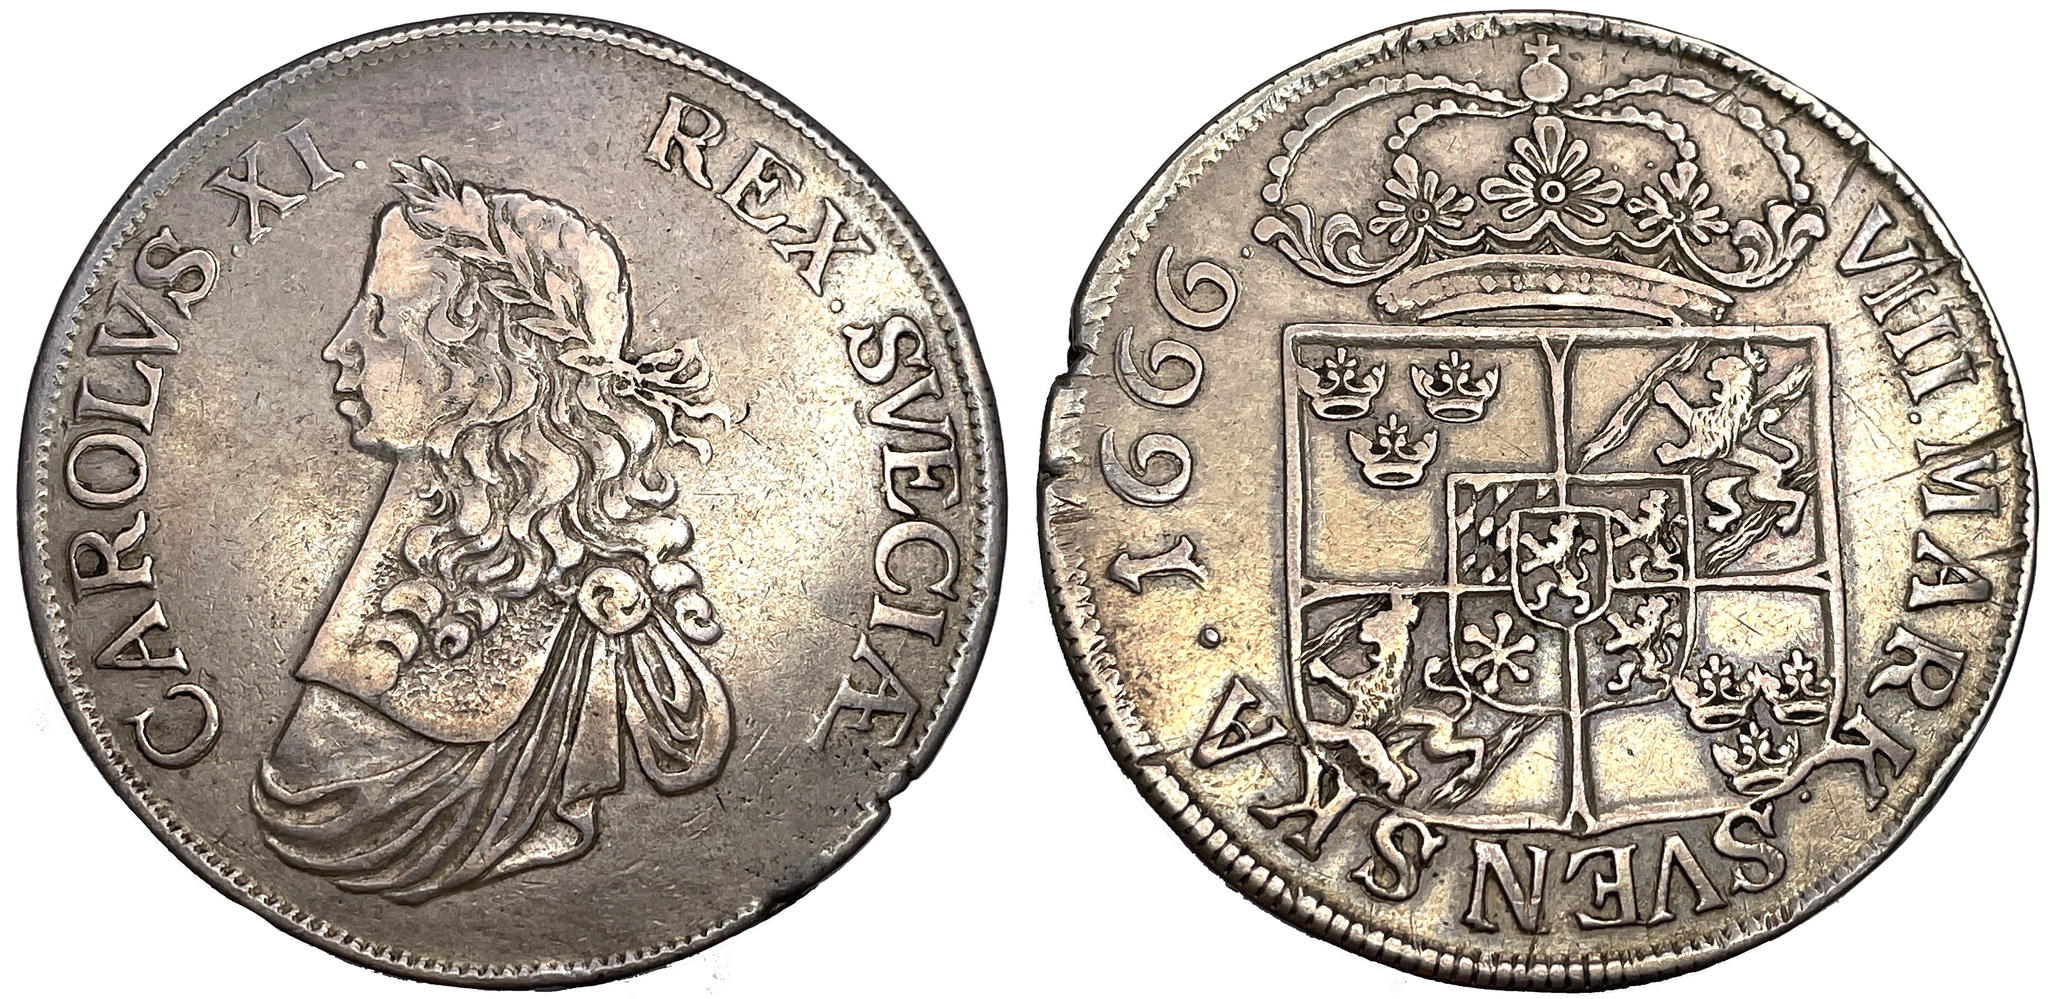 Karl XI 8 Mark 1666 - Mindre bild, delad omskrift, stor krona - RAR - 13 ex i privat ägo